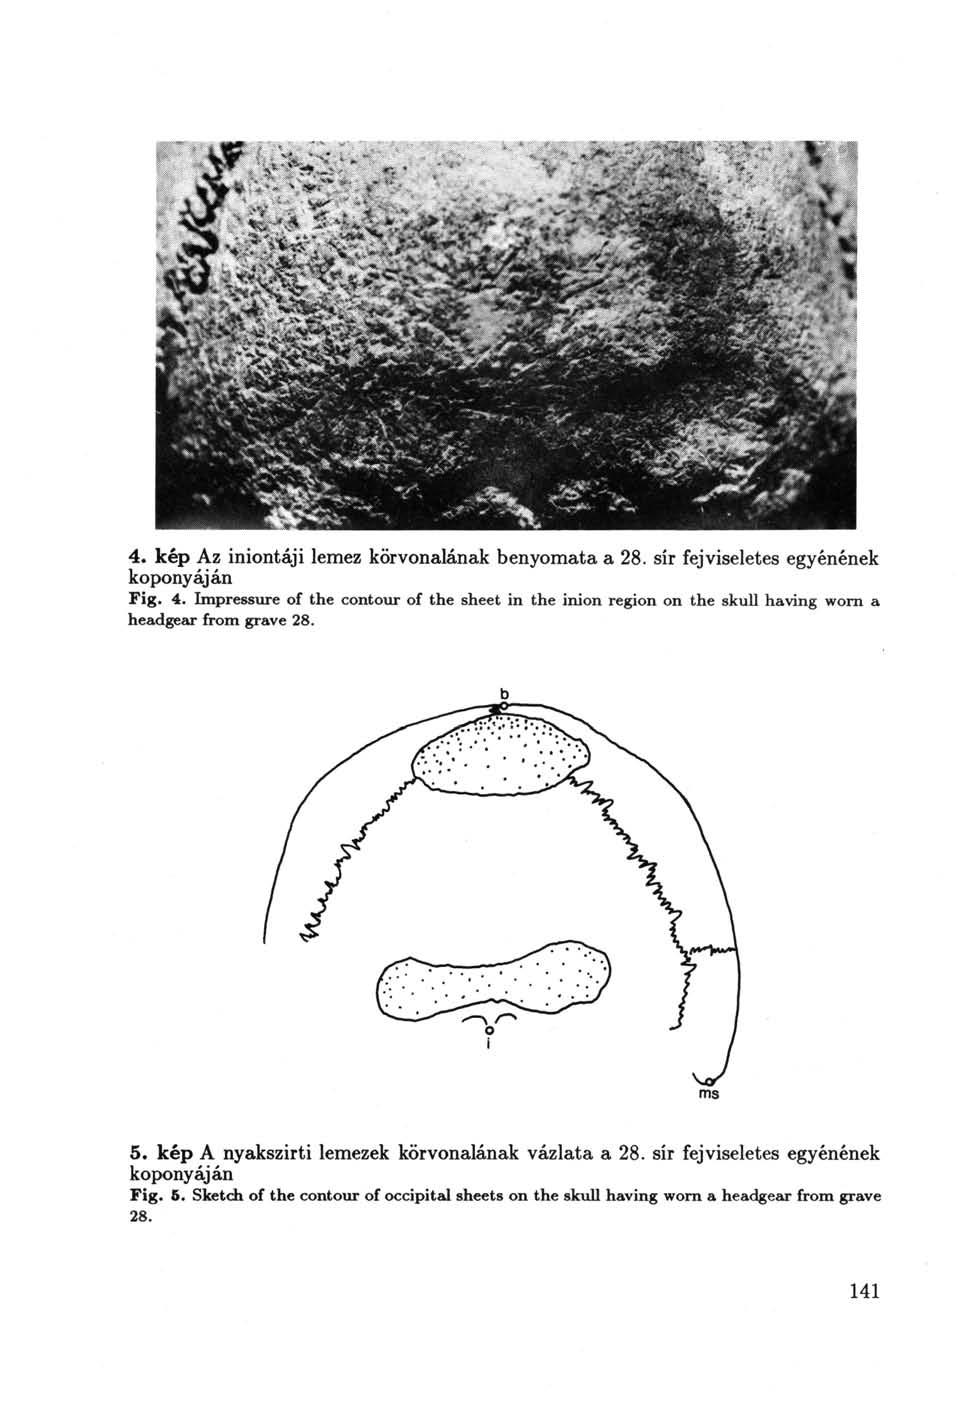 4. kép Az iniontáji lemez körvonalának benyomata a 28. sír fejviseletes egyénének koponyáján Fig. 4.